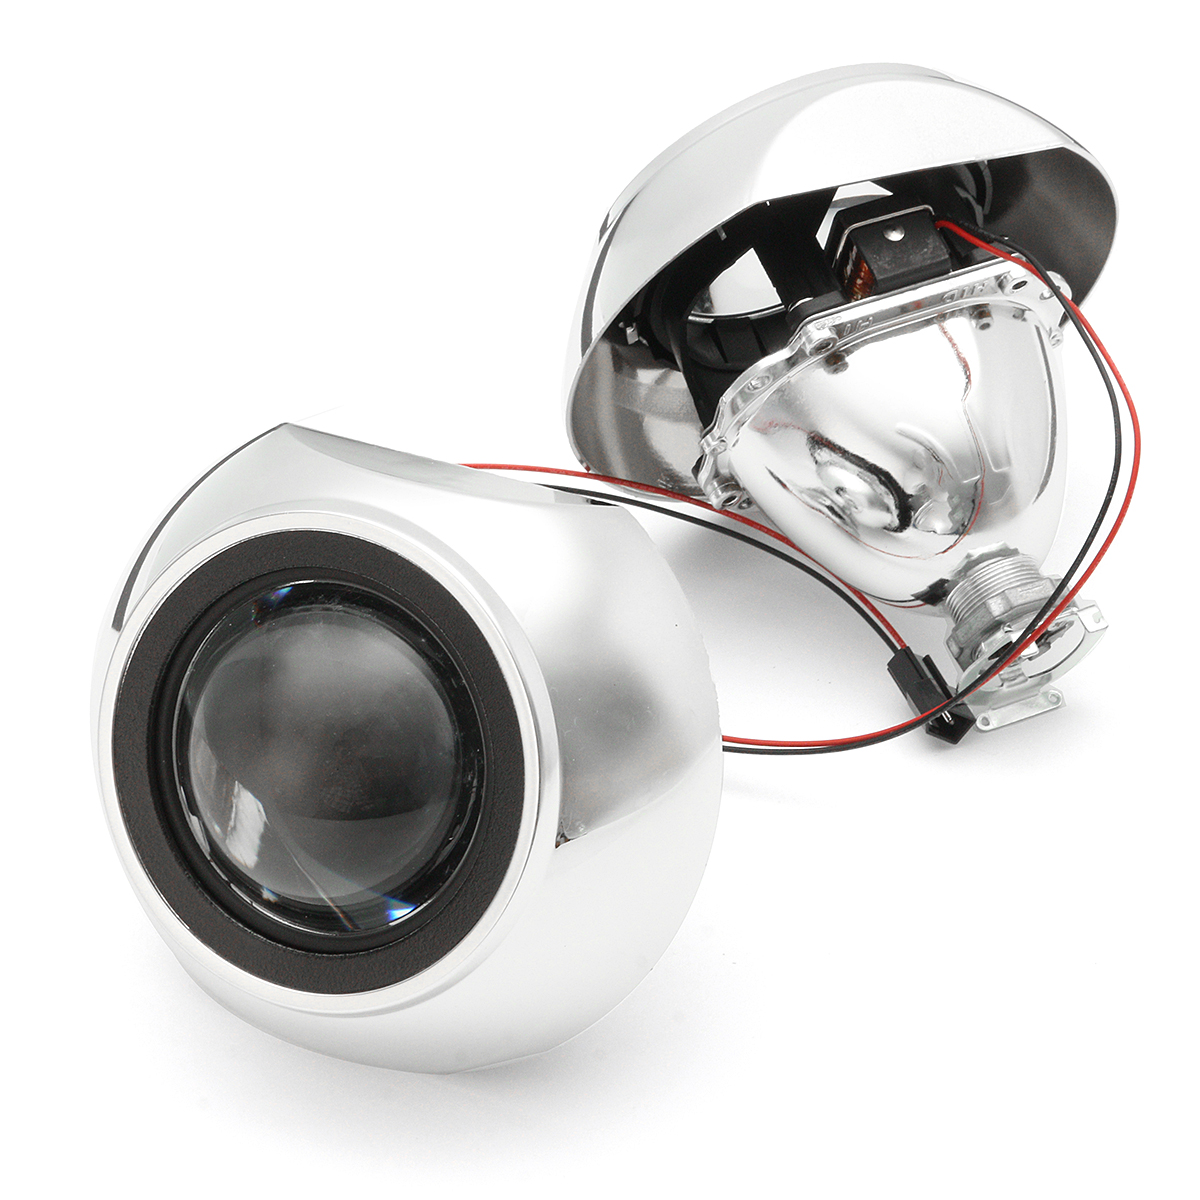 

2Pcs 2.5 Inch Car Bi-xenon HID Headlights Projector Lens Retrofit H1 for LHD